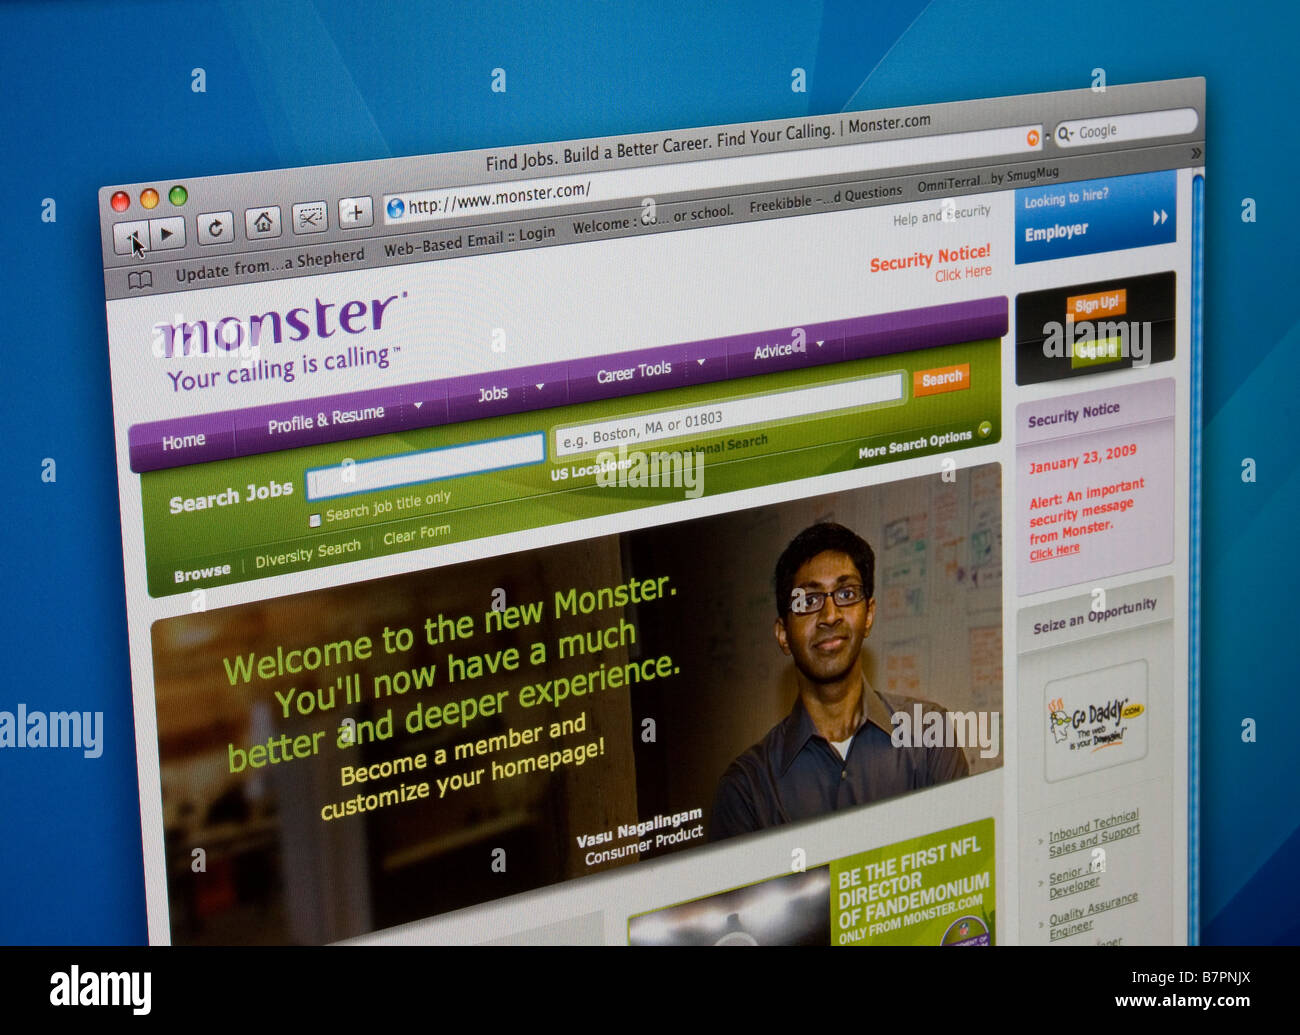 Monster.com jobs Banque de photographies et d'images à haute résolution -  Alamy